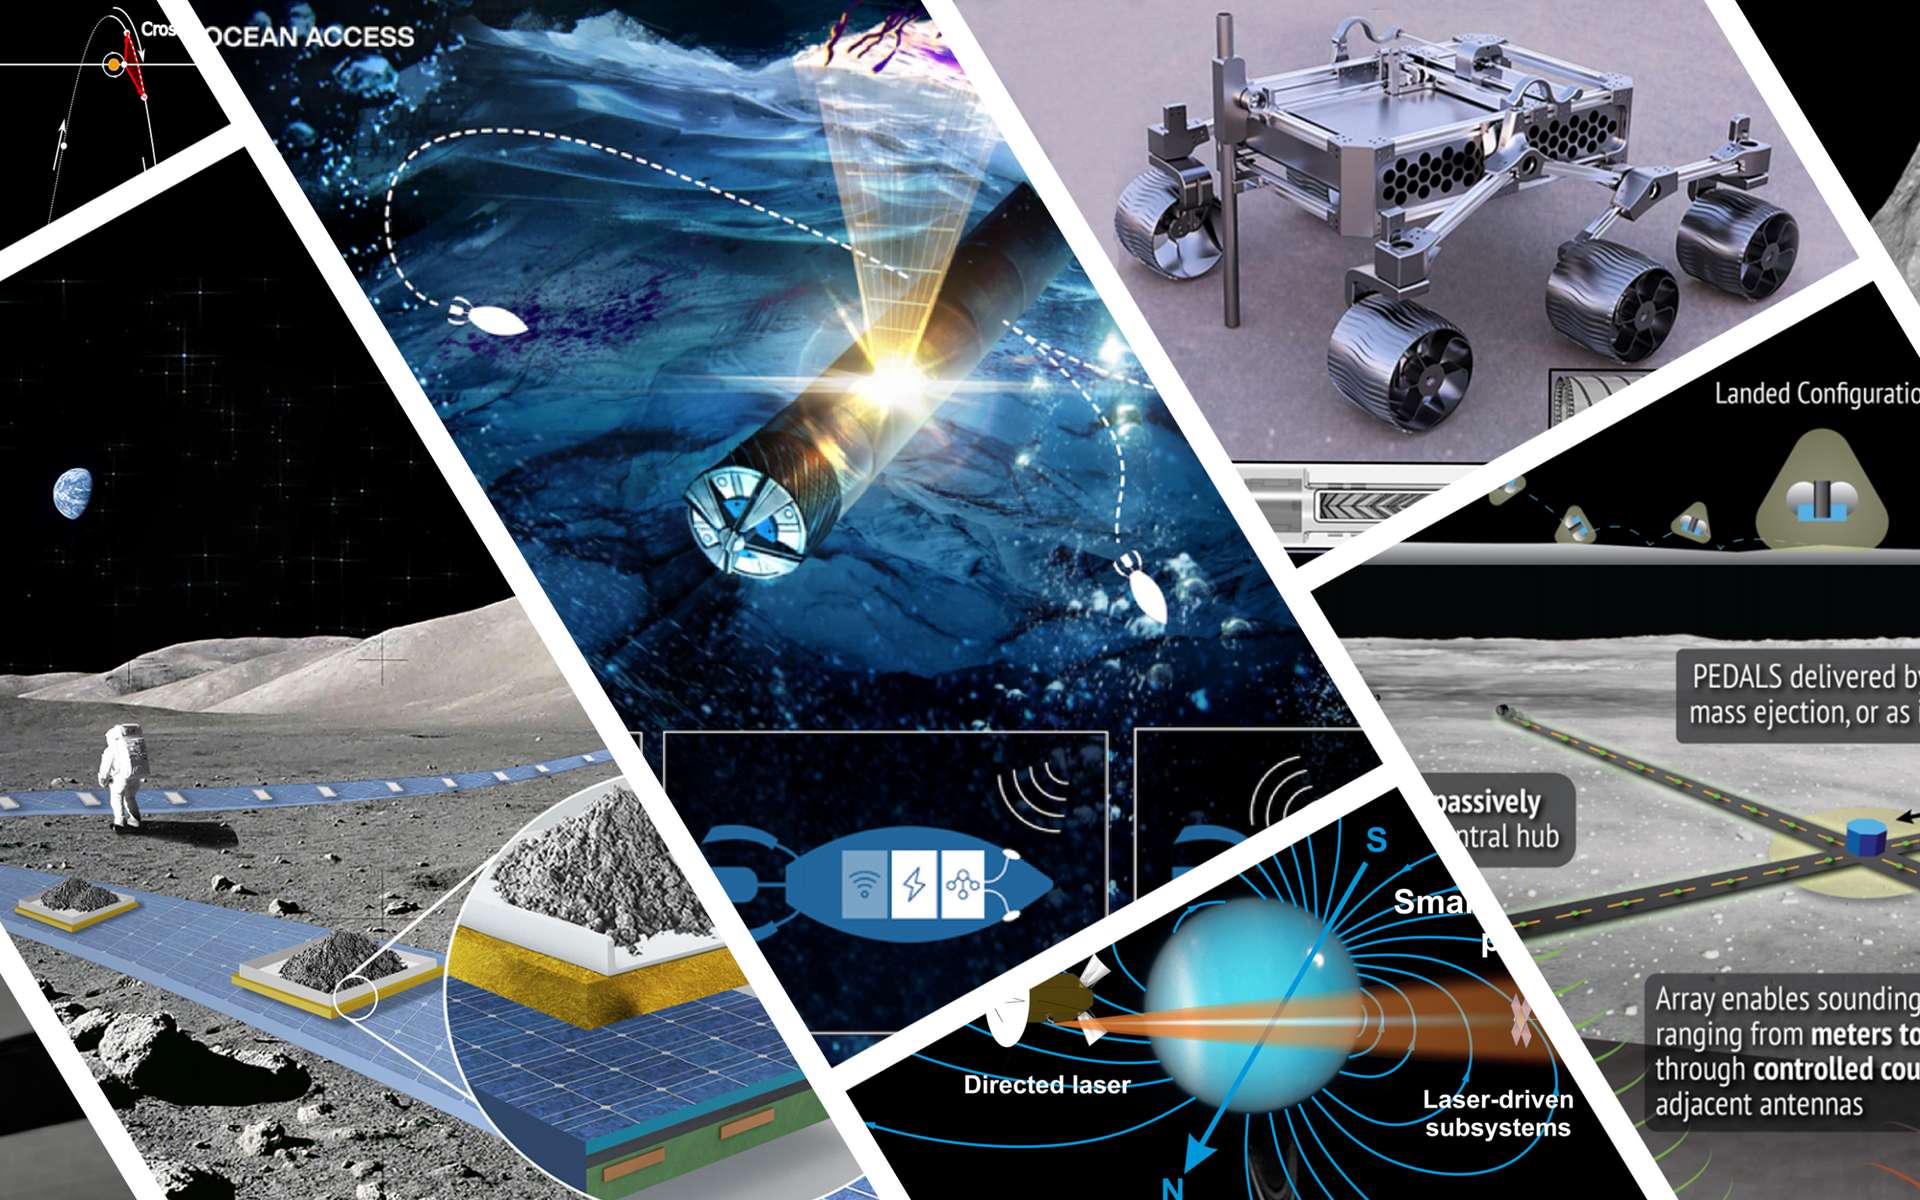 « Des concepts technologiques visionnaires » pour l'exploration spatiale